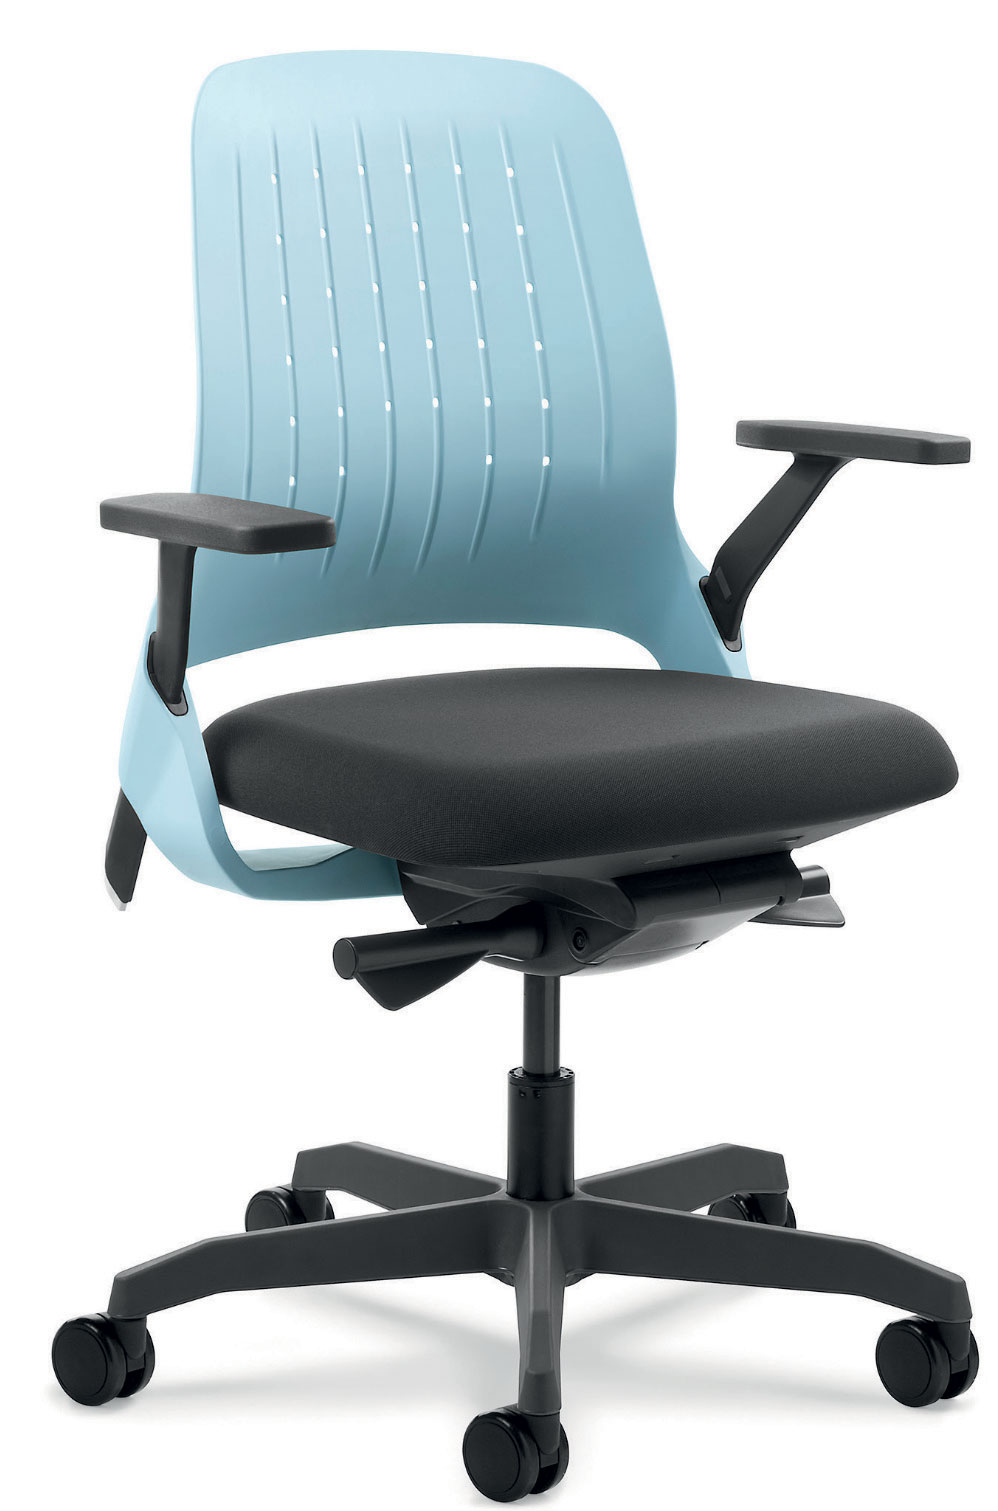 60-design-sustentavel-fabricante-de-cadeira-se-encarrega-do-descarte